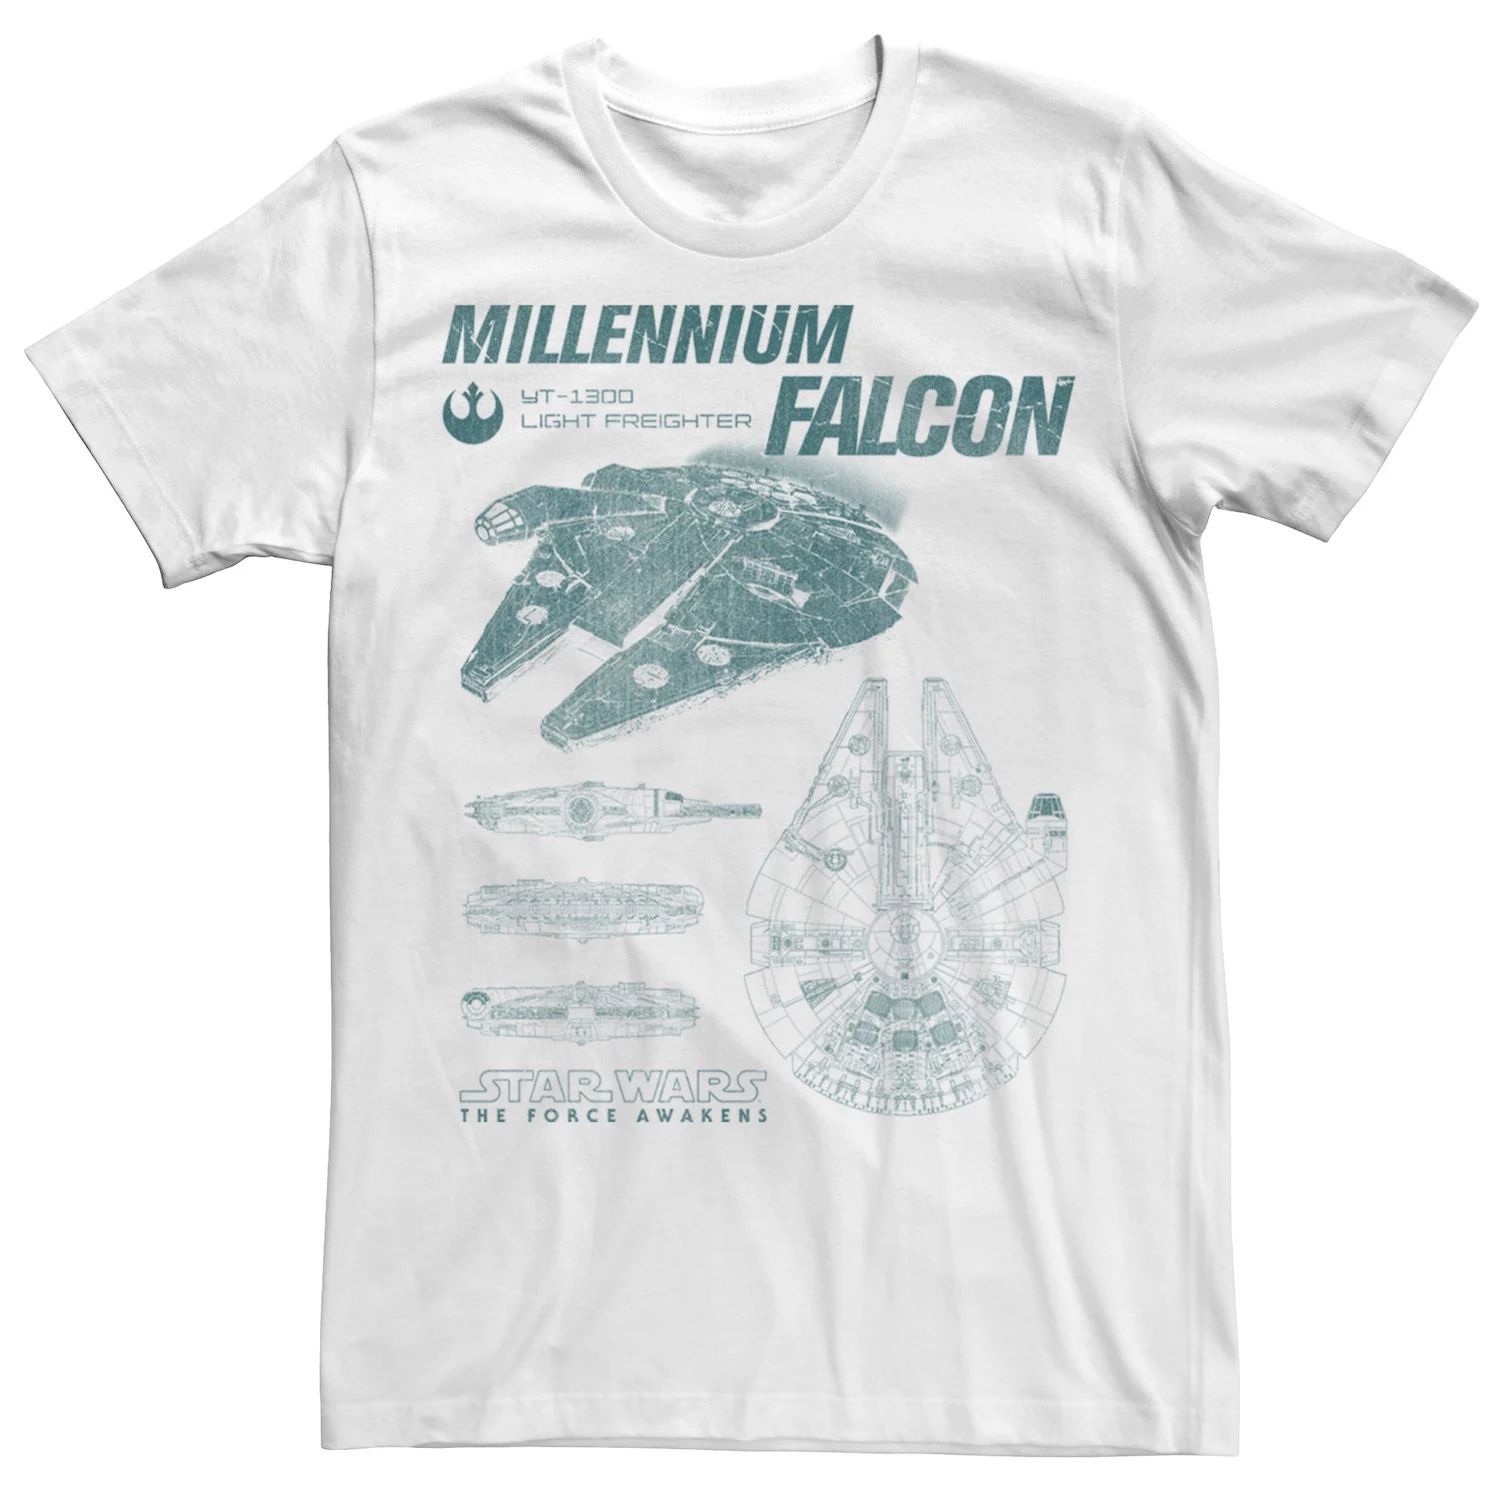 Мужская футболка с профилем «Сокол тысячелетия по Звездным войнам» Star Wars, белый мужская футболка с изображением кореллианского торгового корабля сокол тысячелетия star wars